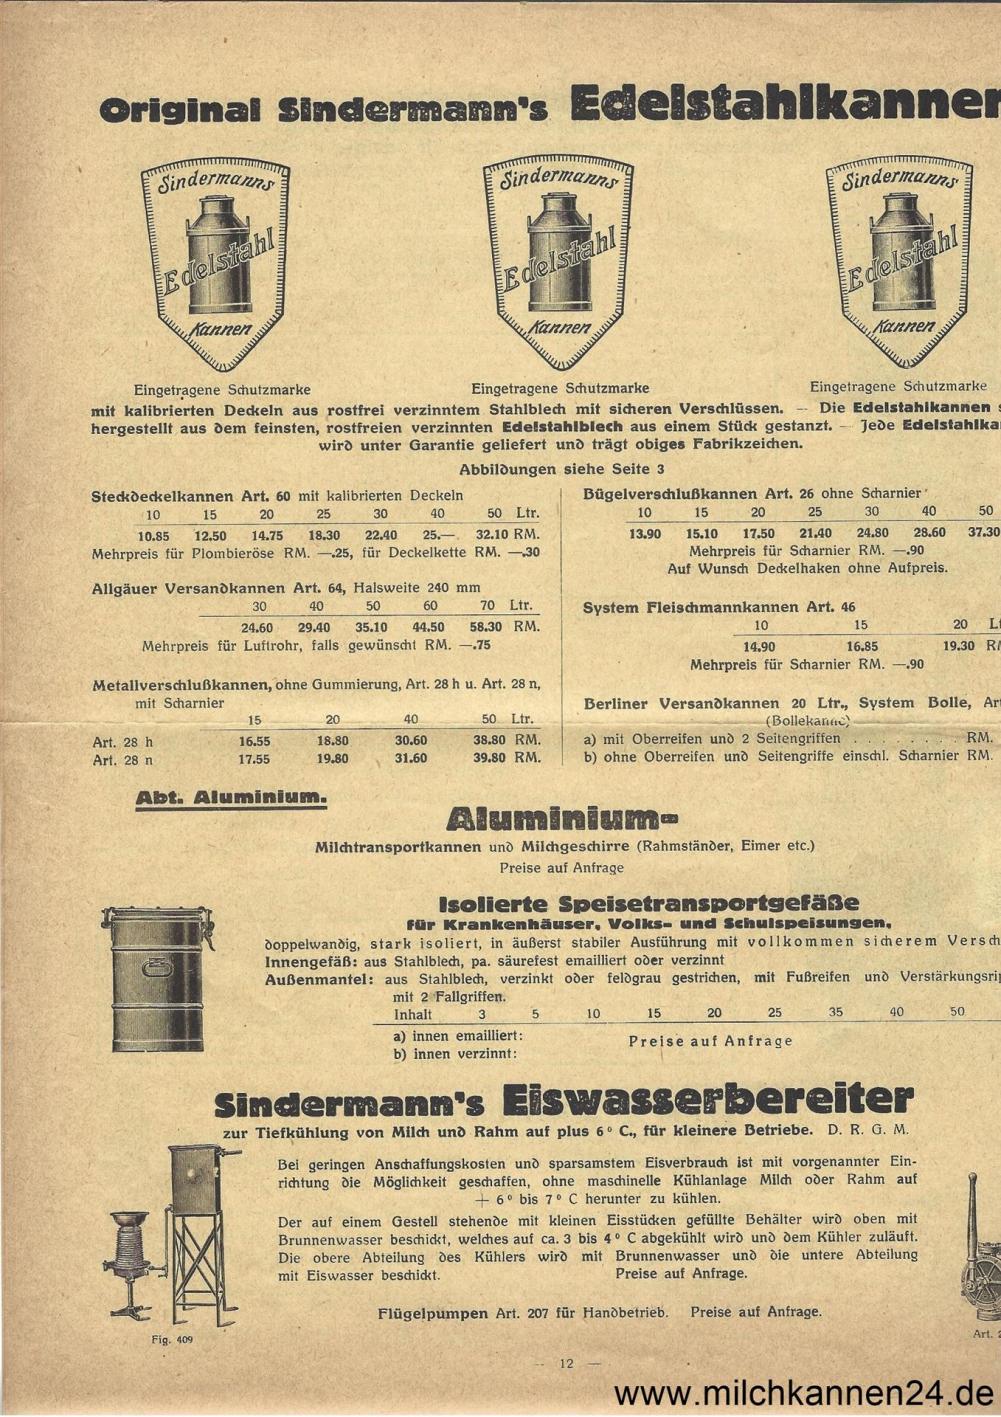 Georg Sindermann Preisliste von 1930, Seite 12. Schwerpunkte: Milchkannen, Transportbehälter, Eiswasserbereiter etc.